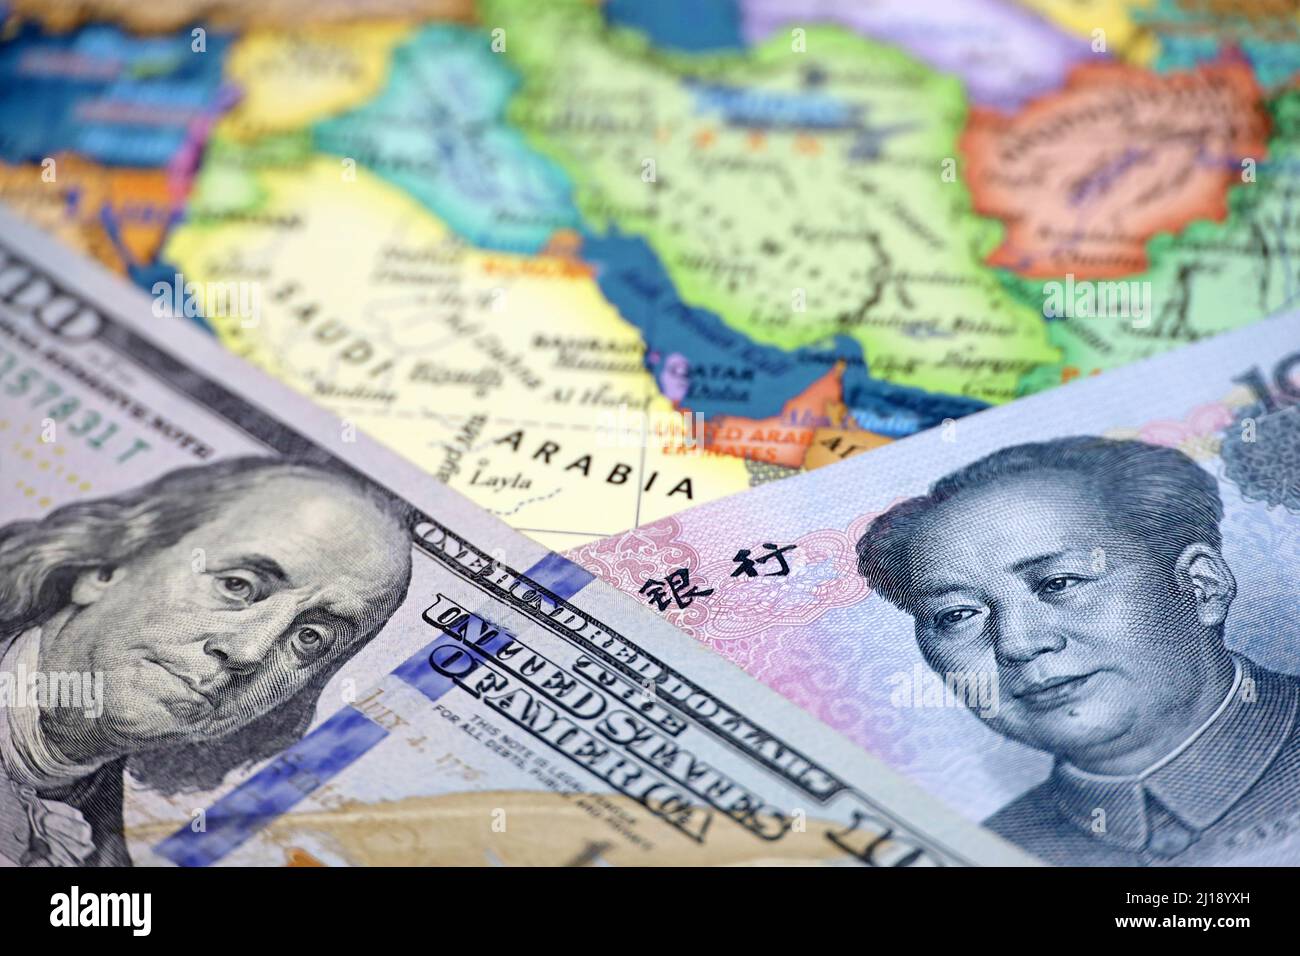 Yuan chinois et dollars américains sur la carte de l'Arabie Saoudite. Concept d'achat de pétrole, concurrence économique entre la Chine et les Etats-Unis dans les pays du Golfe persique Banque D'Images